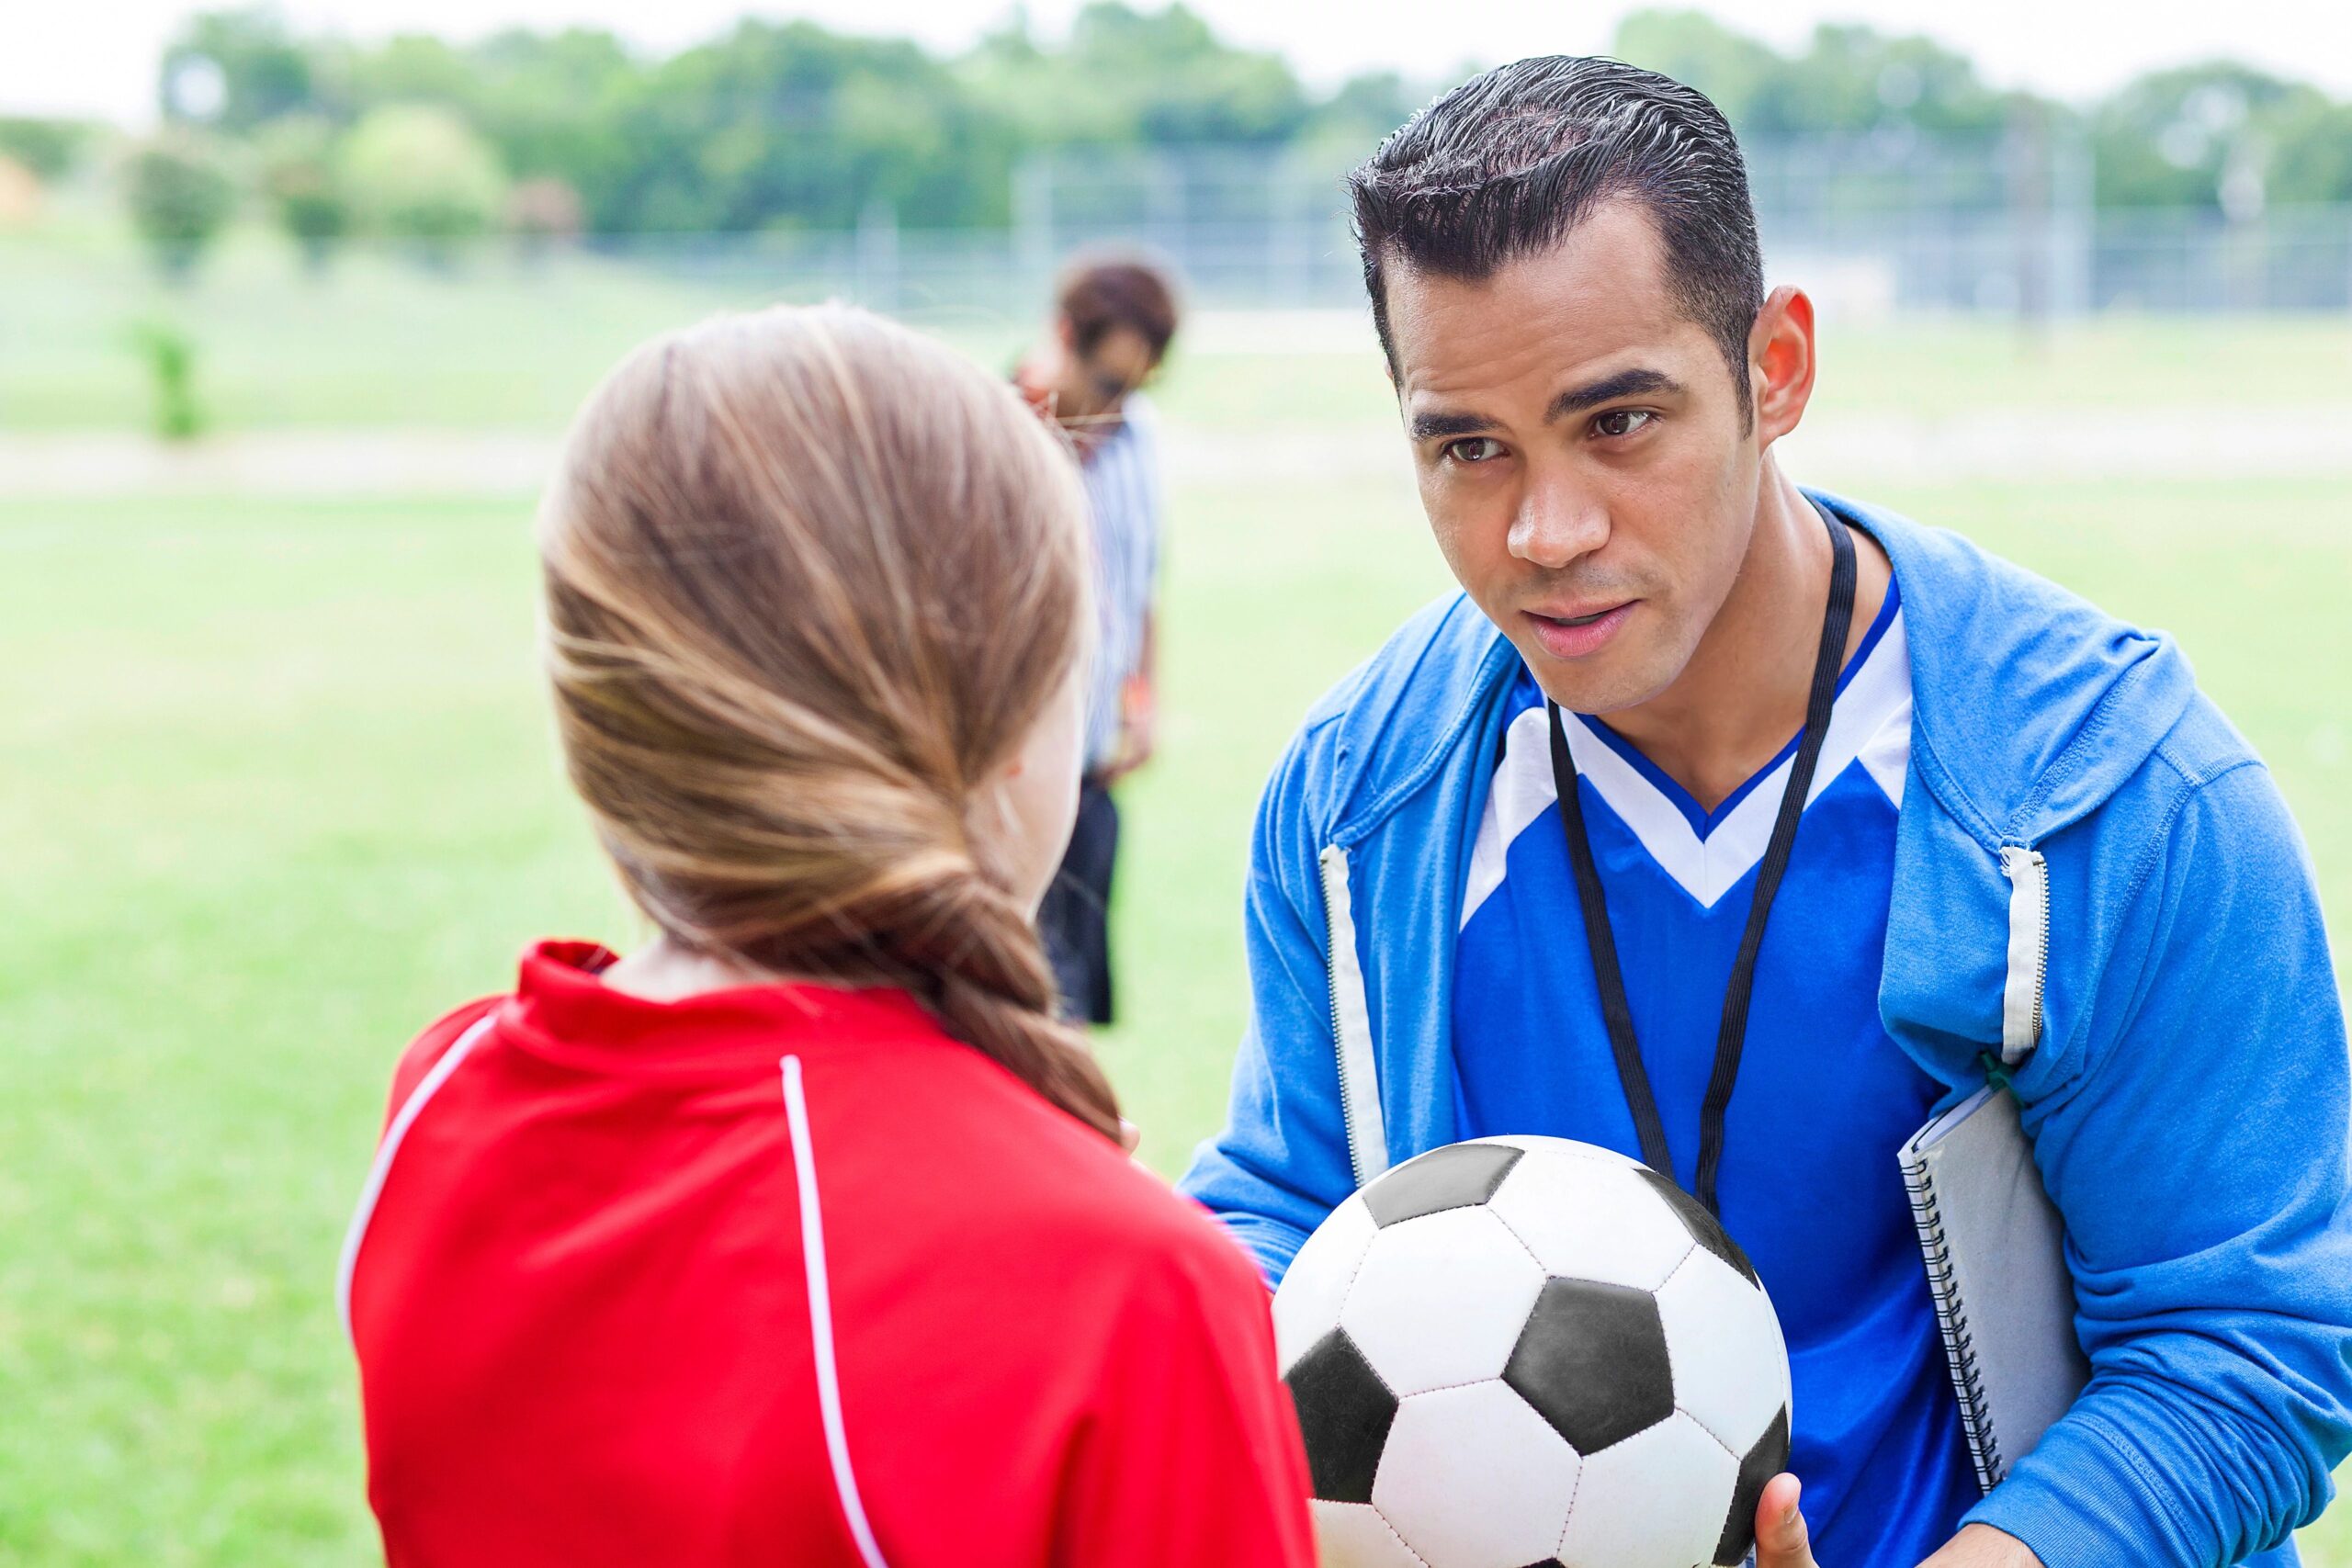 5 Razones por las que los niños deben practicar deportes – Neuro English